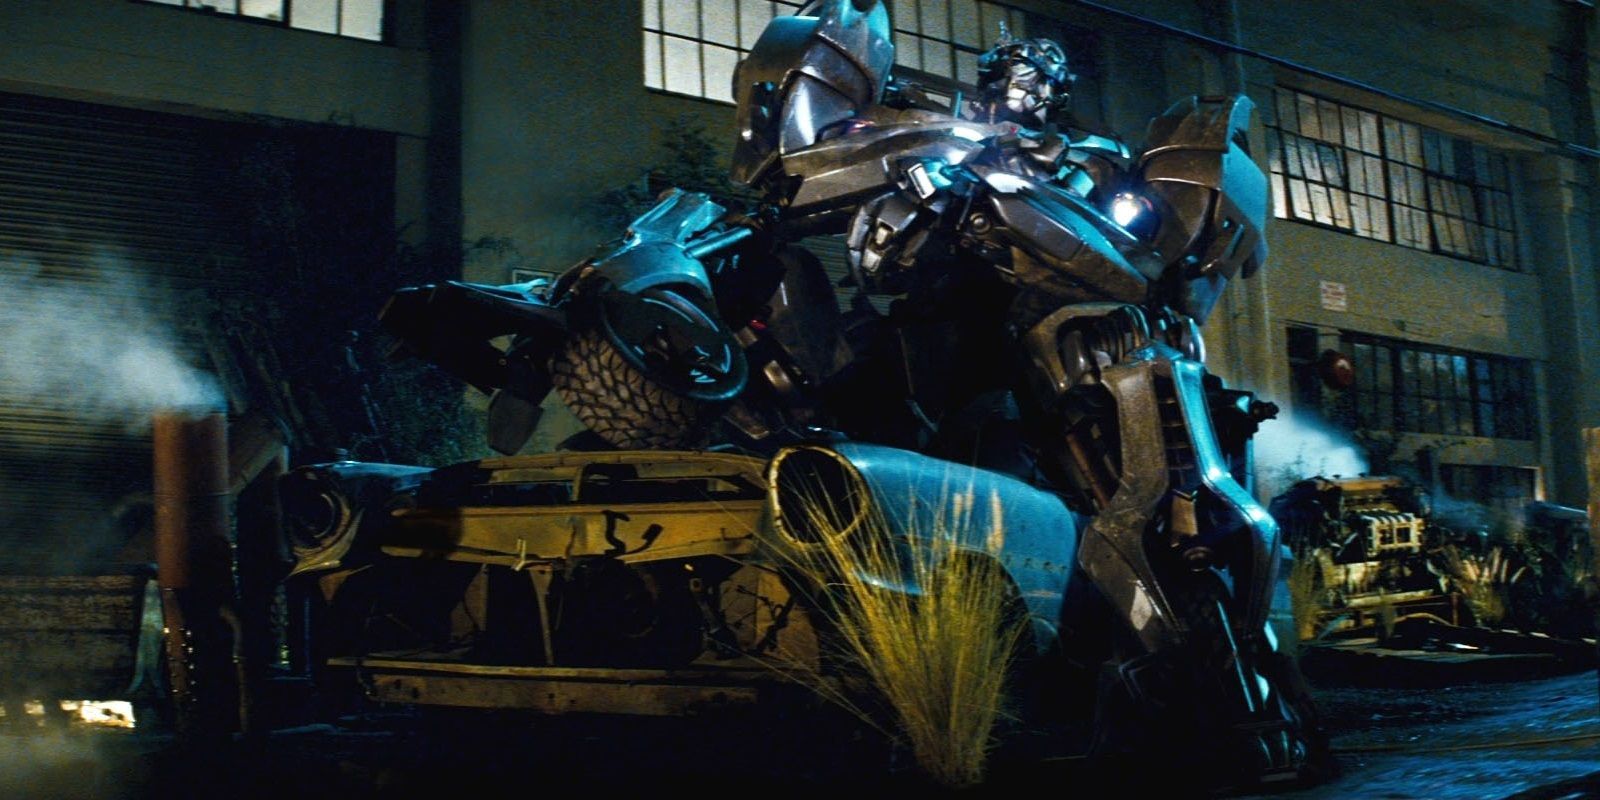 Jazz Transformers - Lamest Movie Deaths